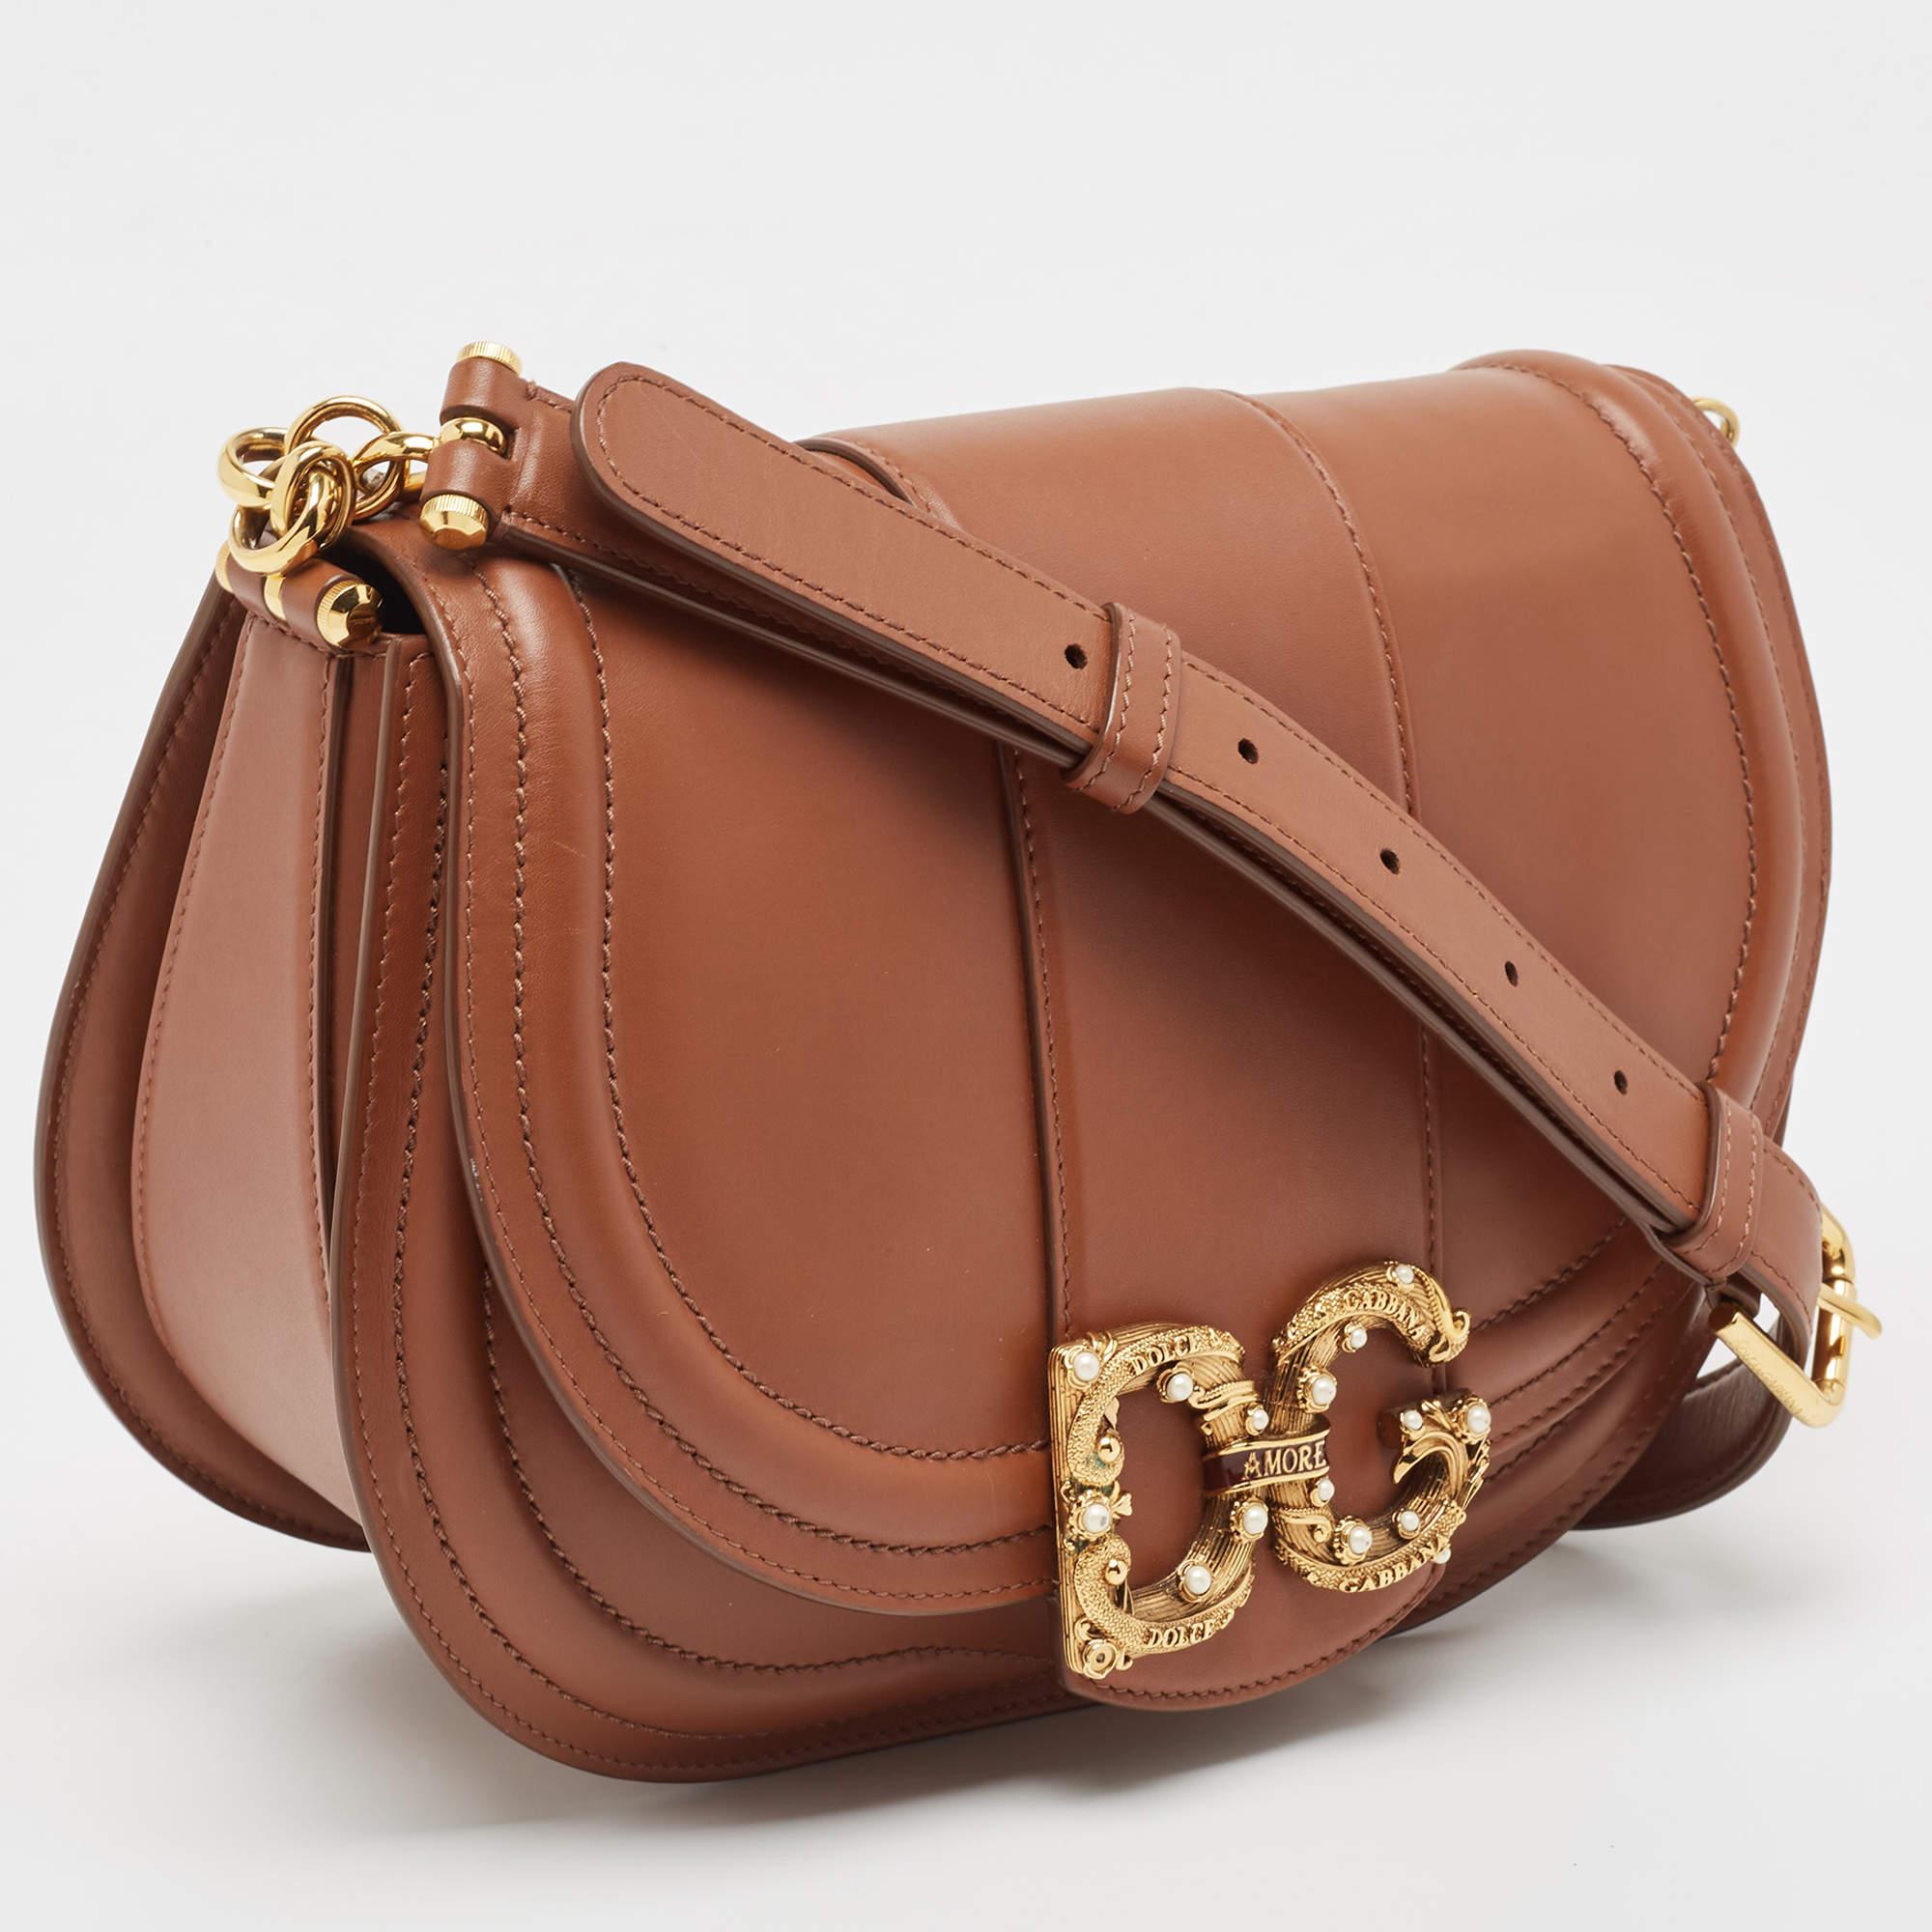 Dolce & Gabbana Brown Leather DG Amore Shoulder Bag 2